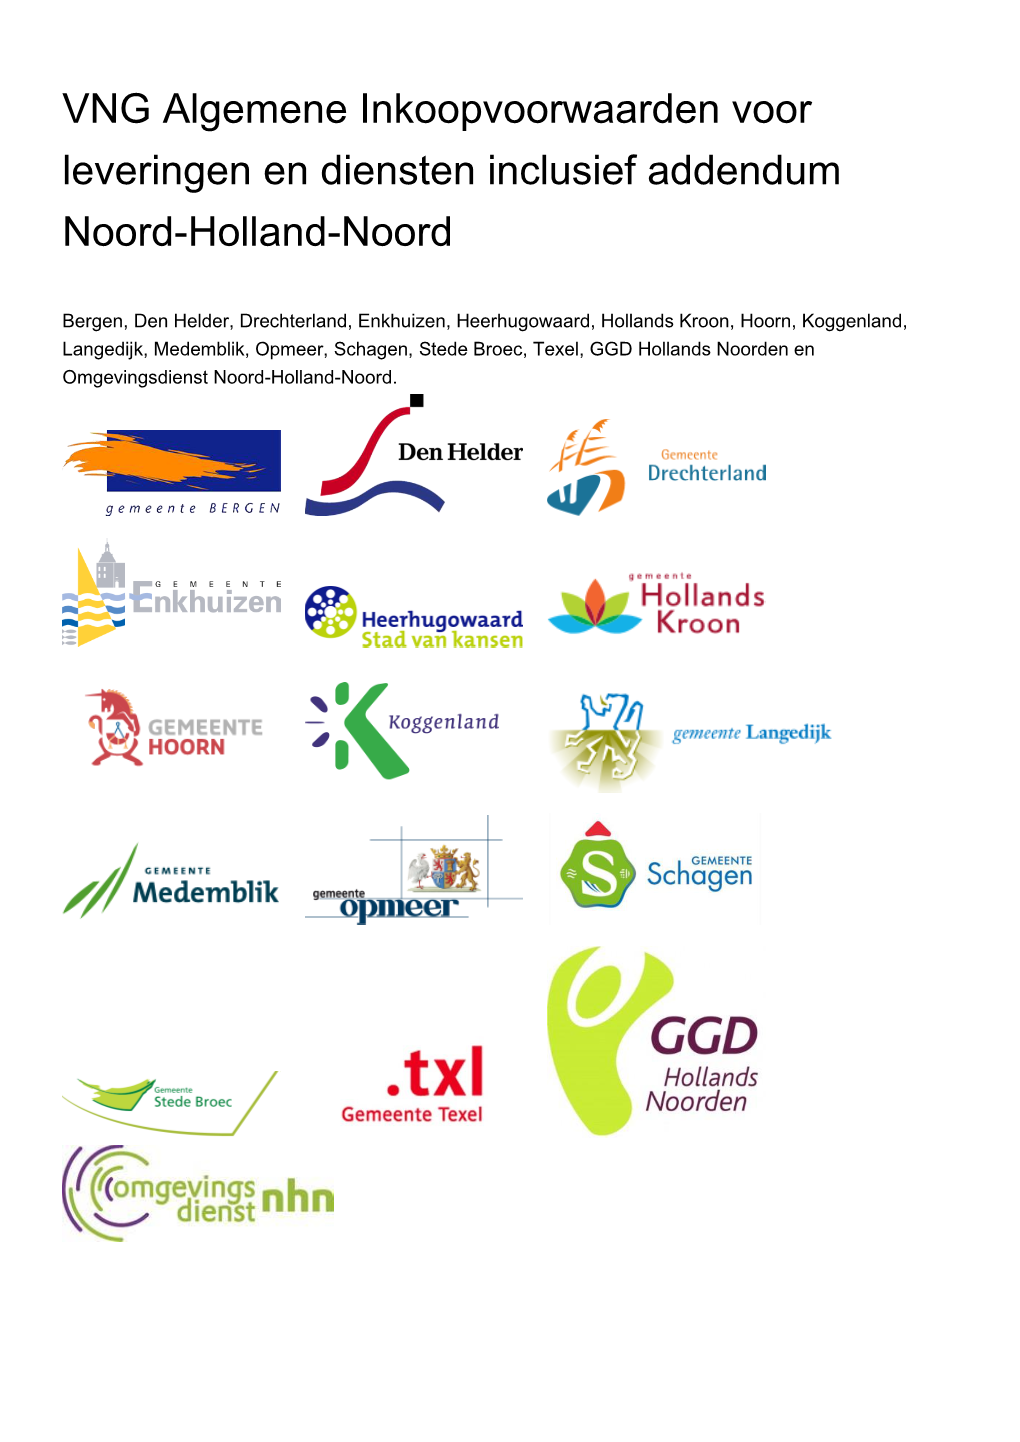 VNG Algemene Inkoopvoorwaarden Voor Leveringen En Diensten Inclusief Addendum Noord-Holland-Noord